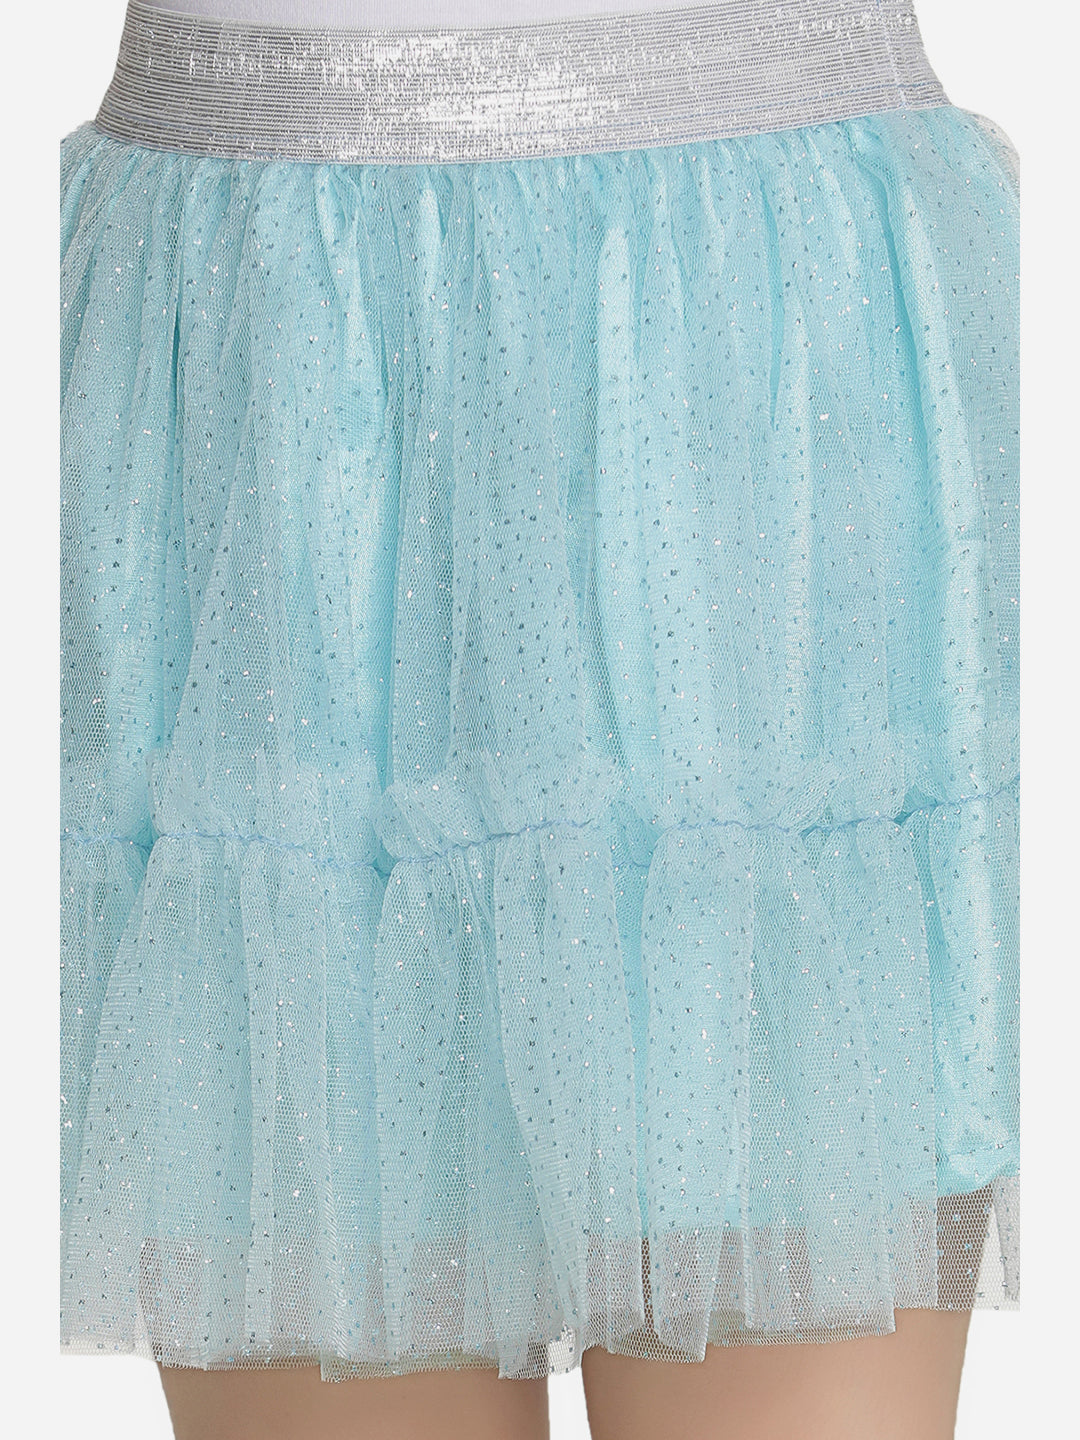 Girls Glitter Blue Net Skirt with Silver Elastic Waist